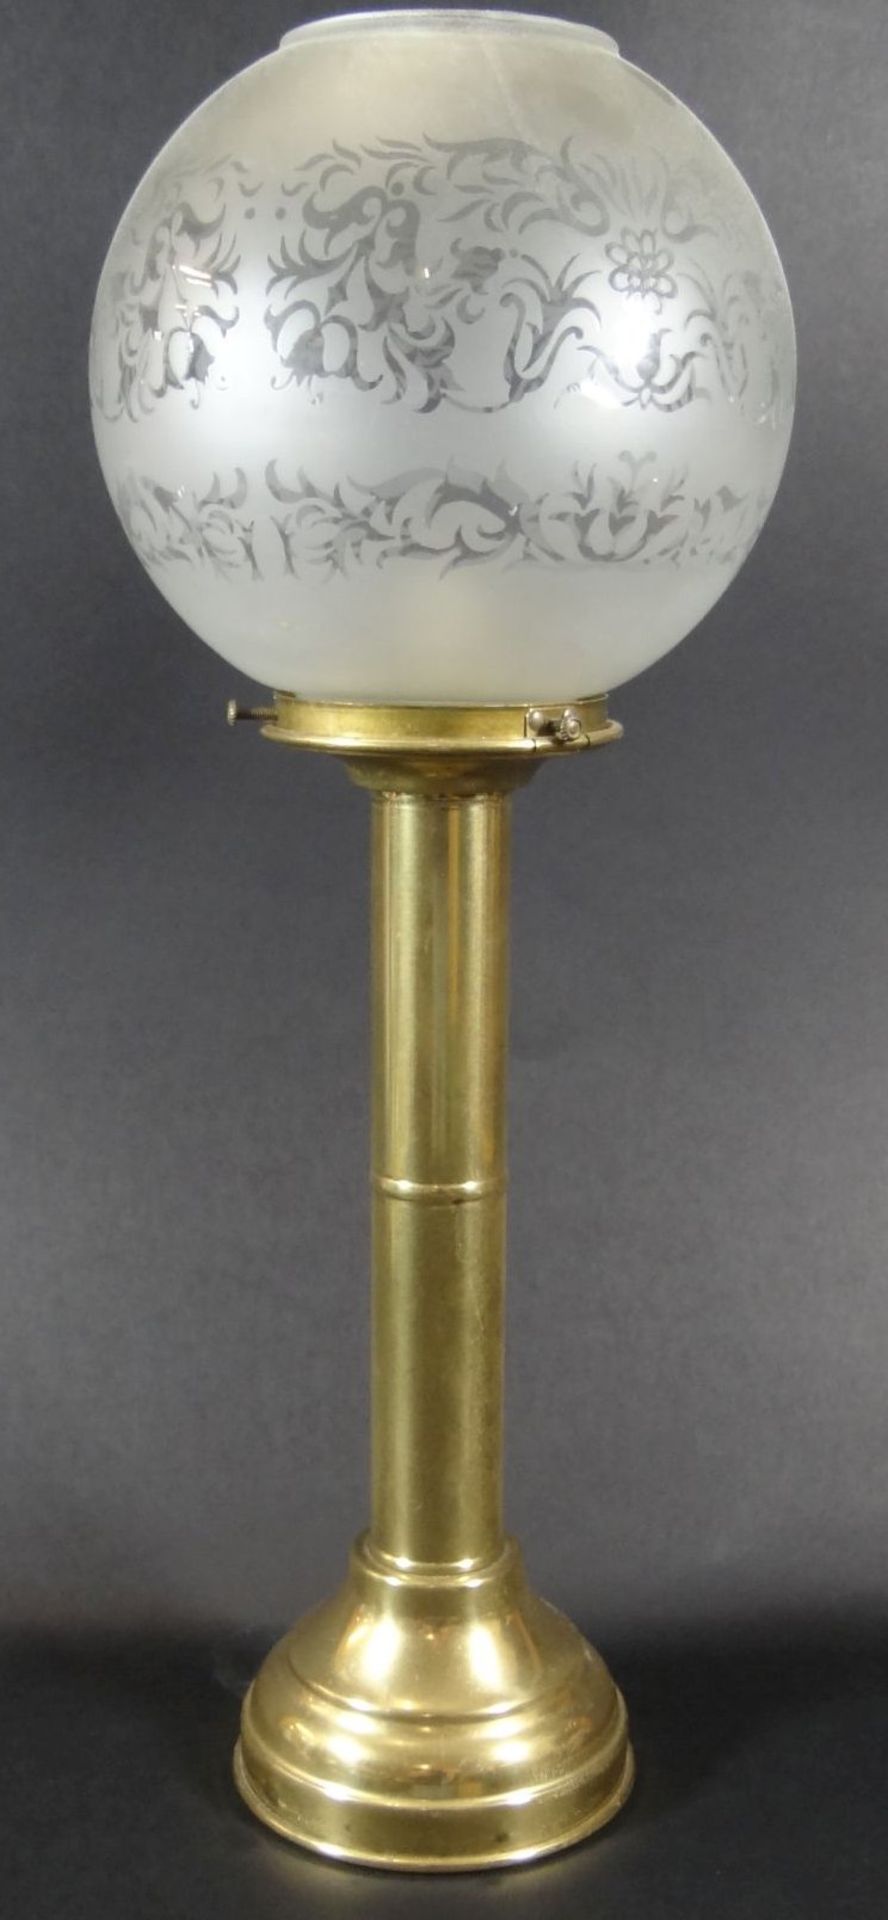 schwerer Messing-Kerzenhalter mit Glaskuppel, H-38 cm- - -22.61 % buyer's premium on the hammer